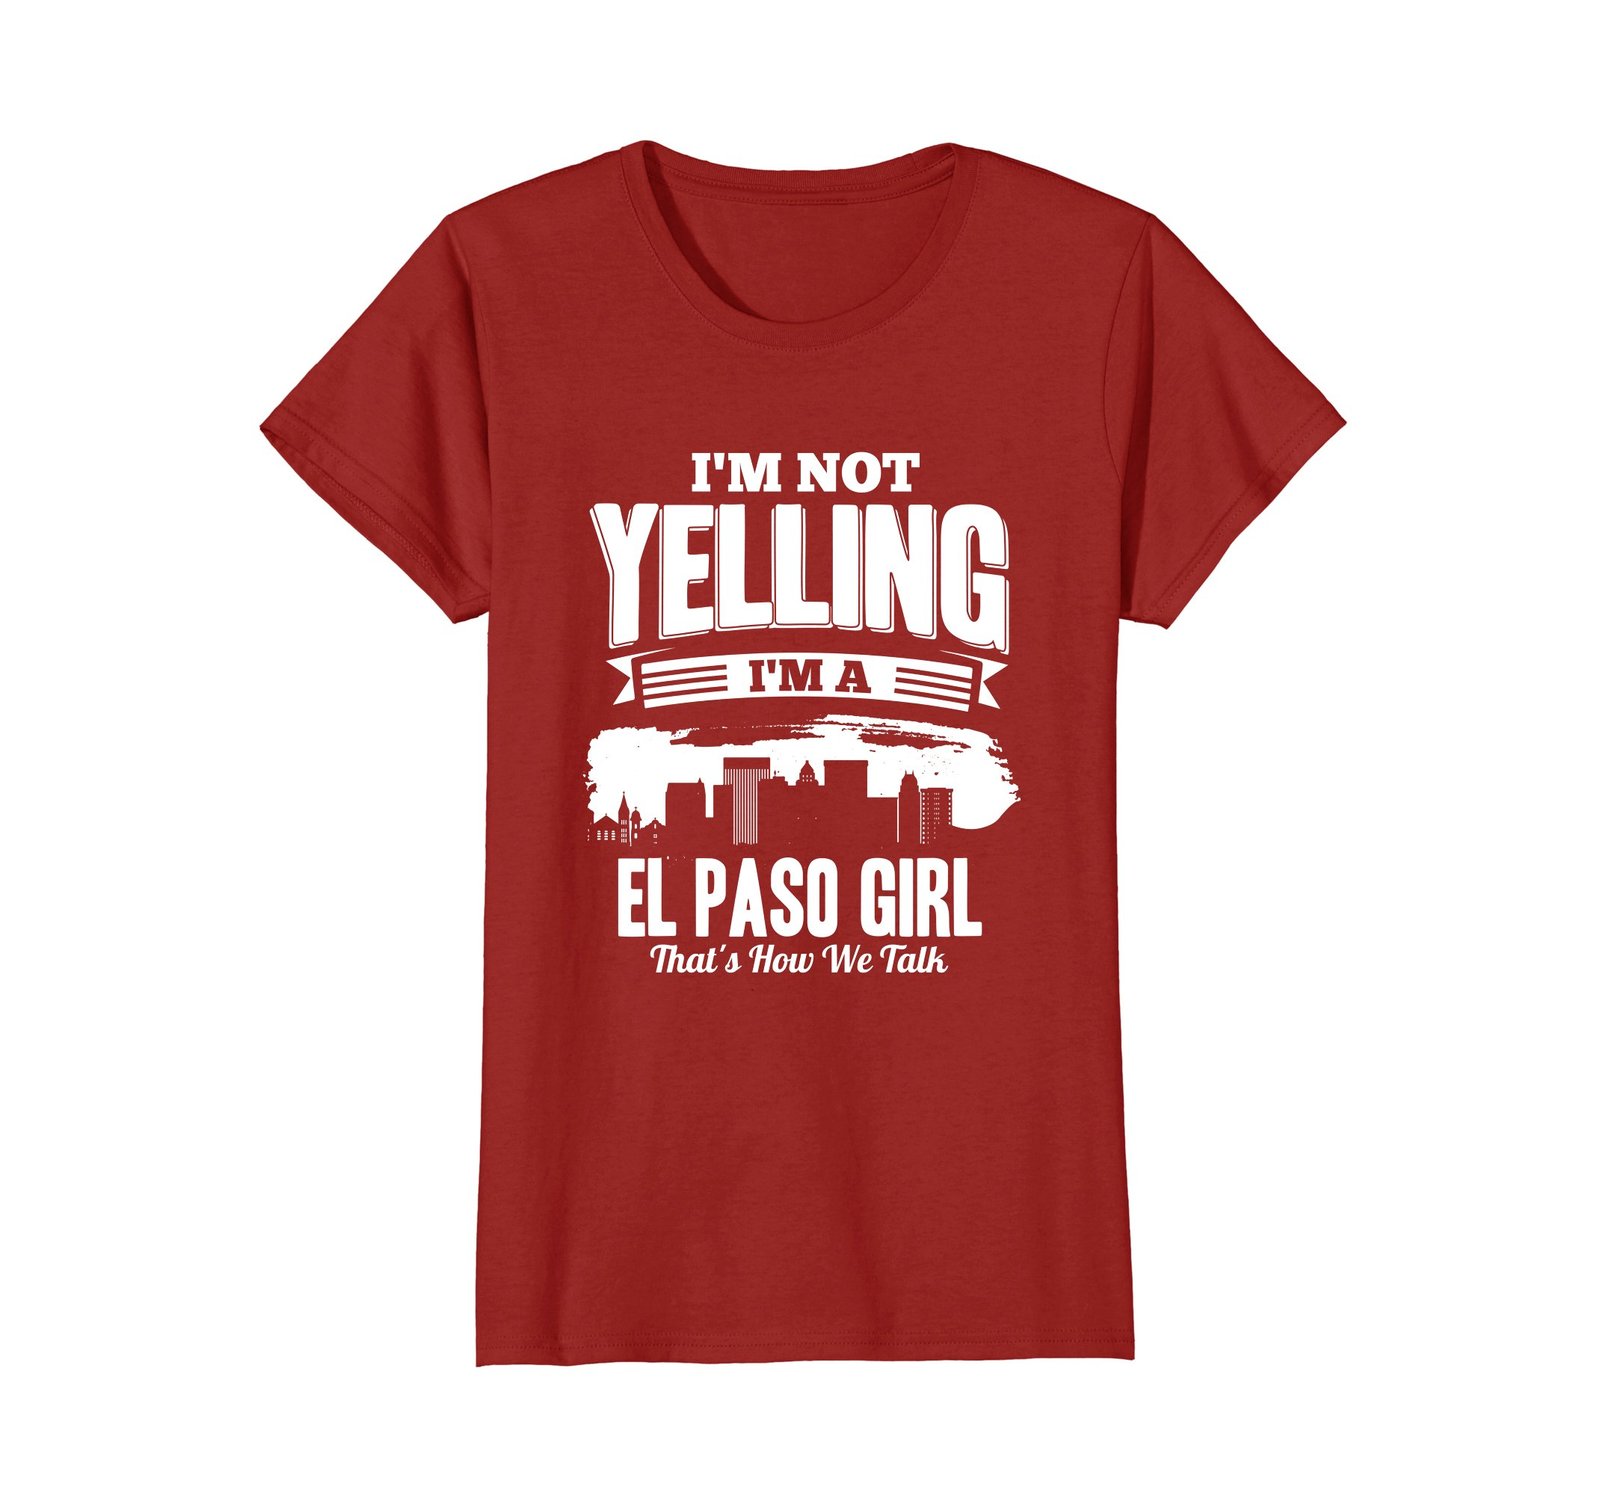 Funny Shirts - I'M NOT YELLING I'M An El Paso GIRL T-shirt Wowen